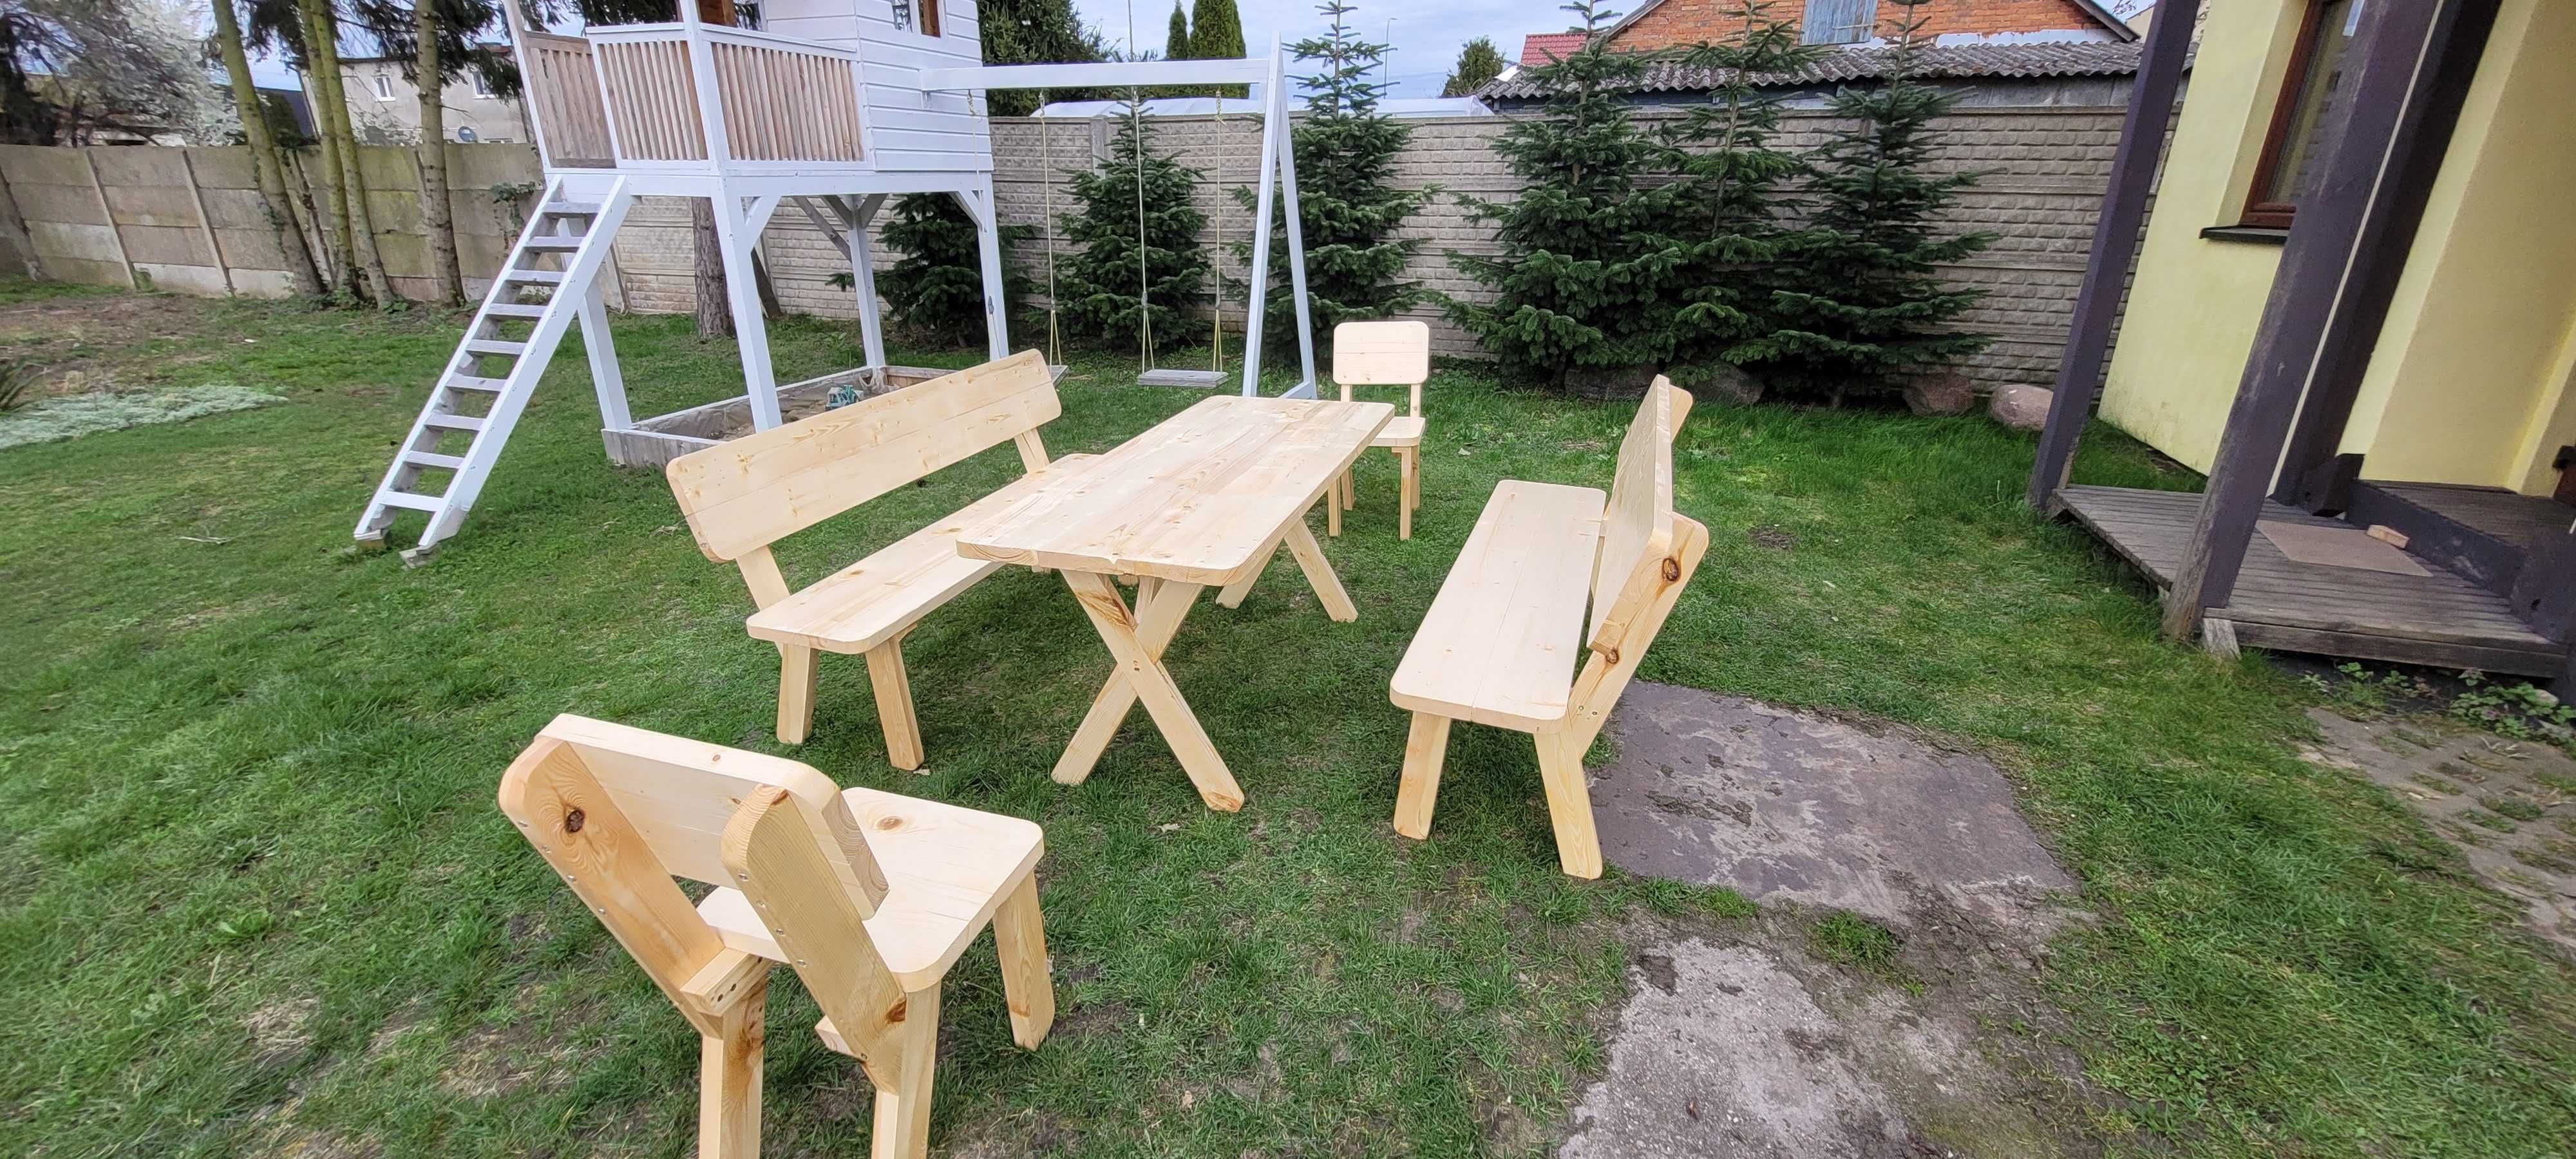 stół ogrodowy z ławkami